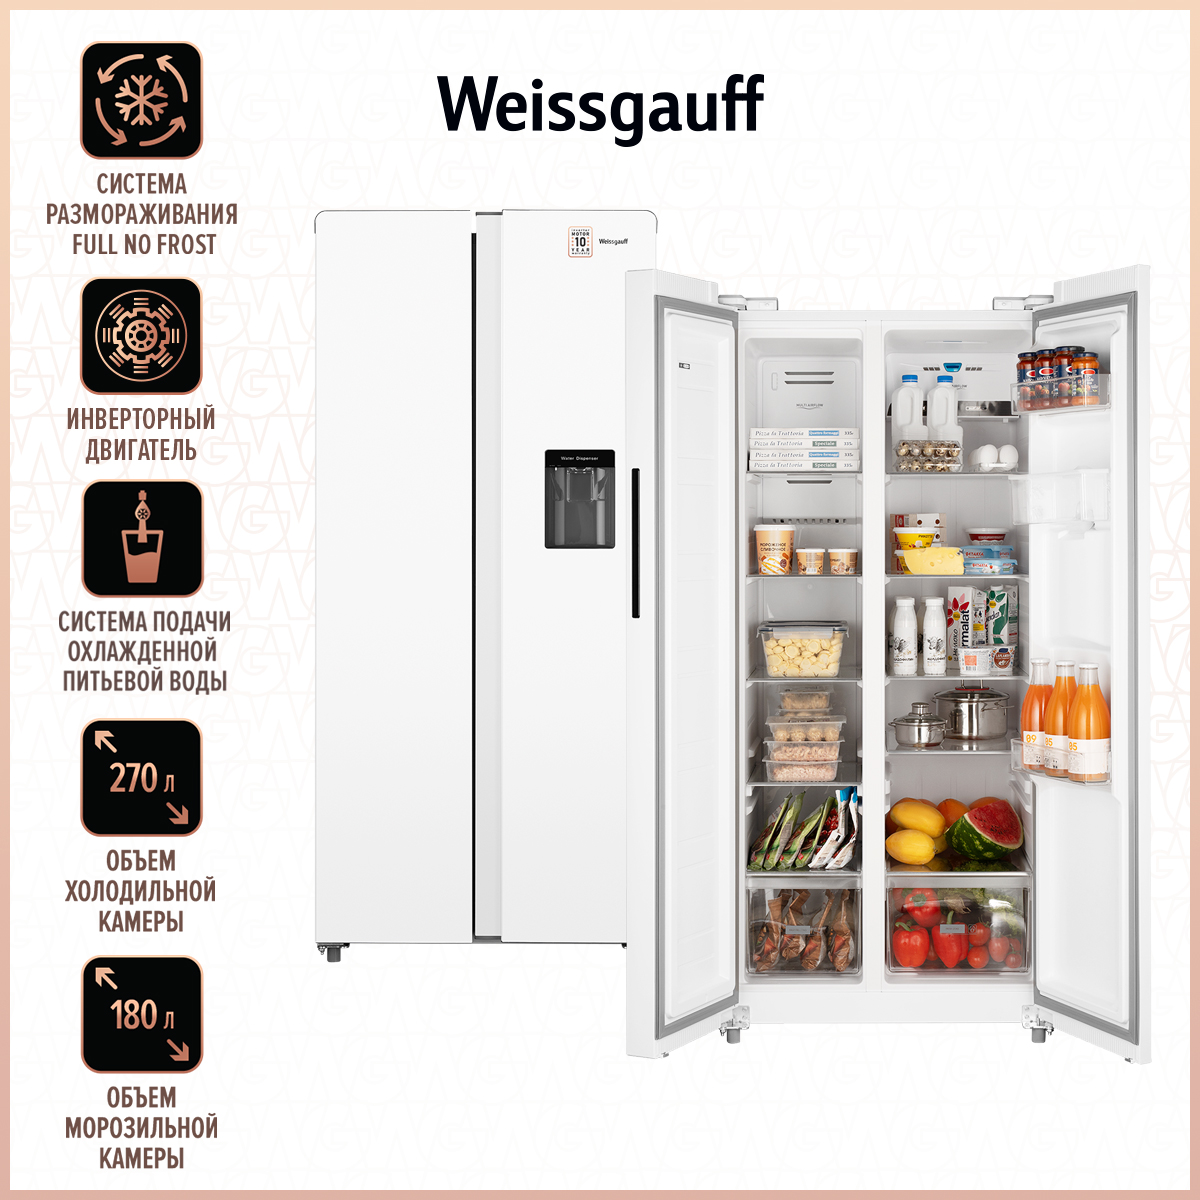 Двухкамерные холодильники Weissgauff - купить двухкамерный холодильник Вайсгауф, цены на Мегамаркет